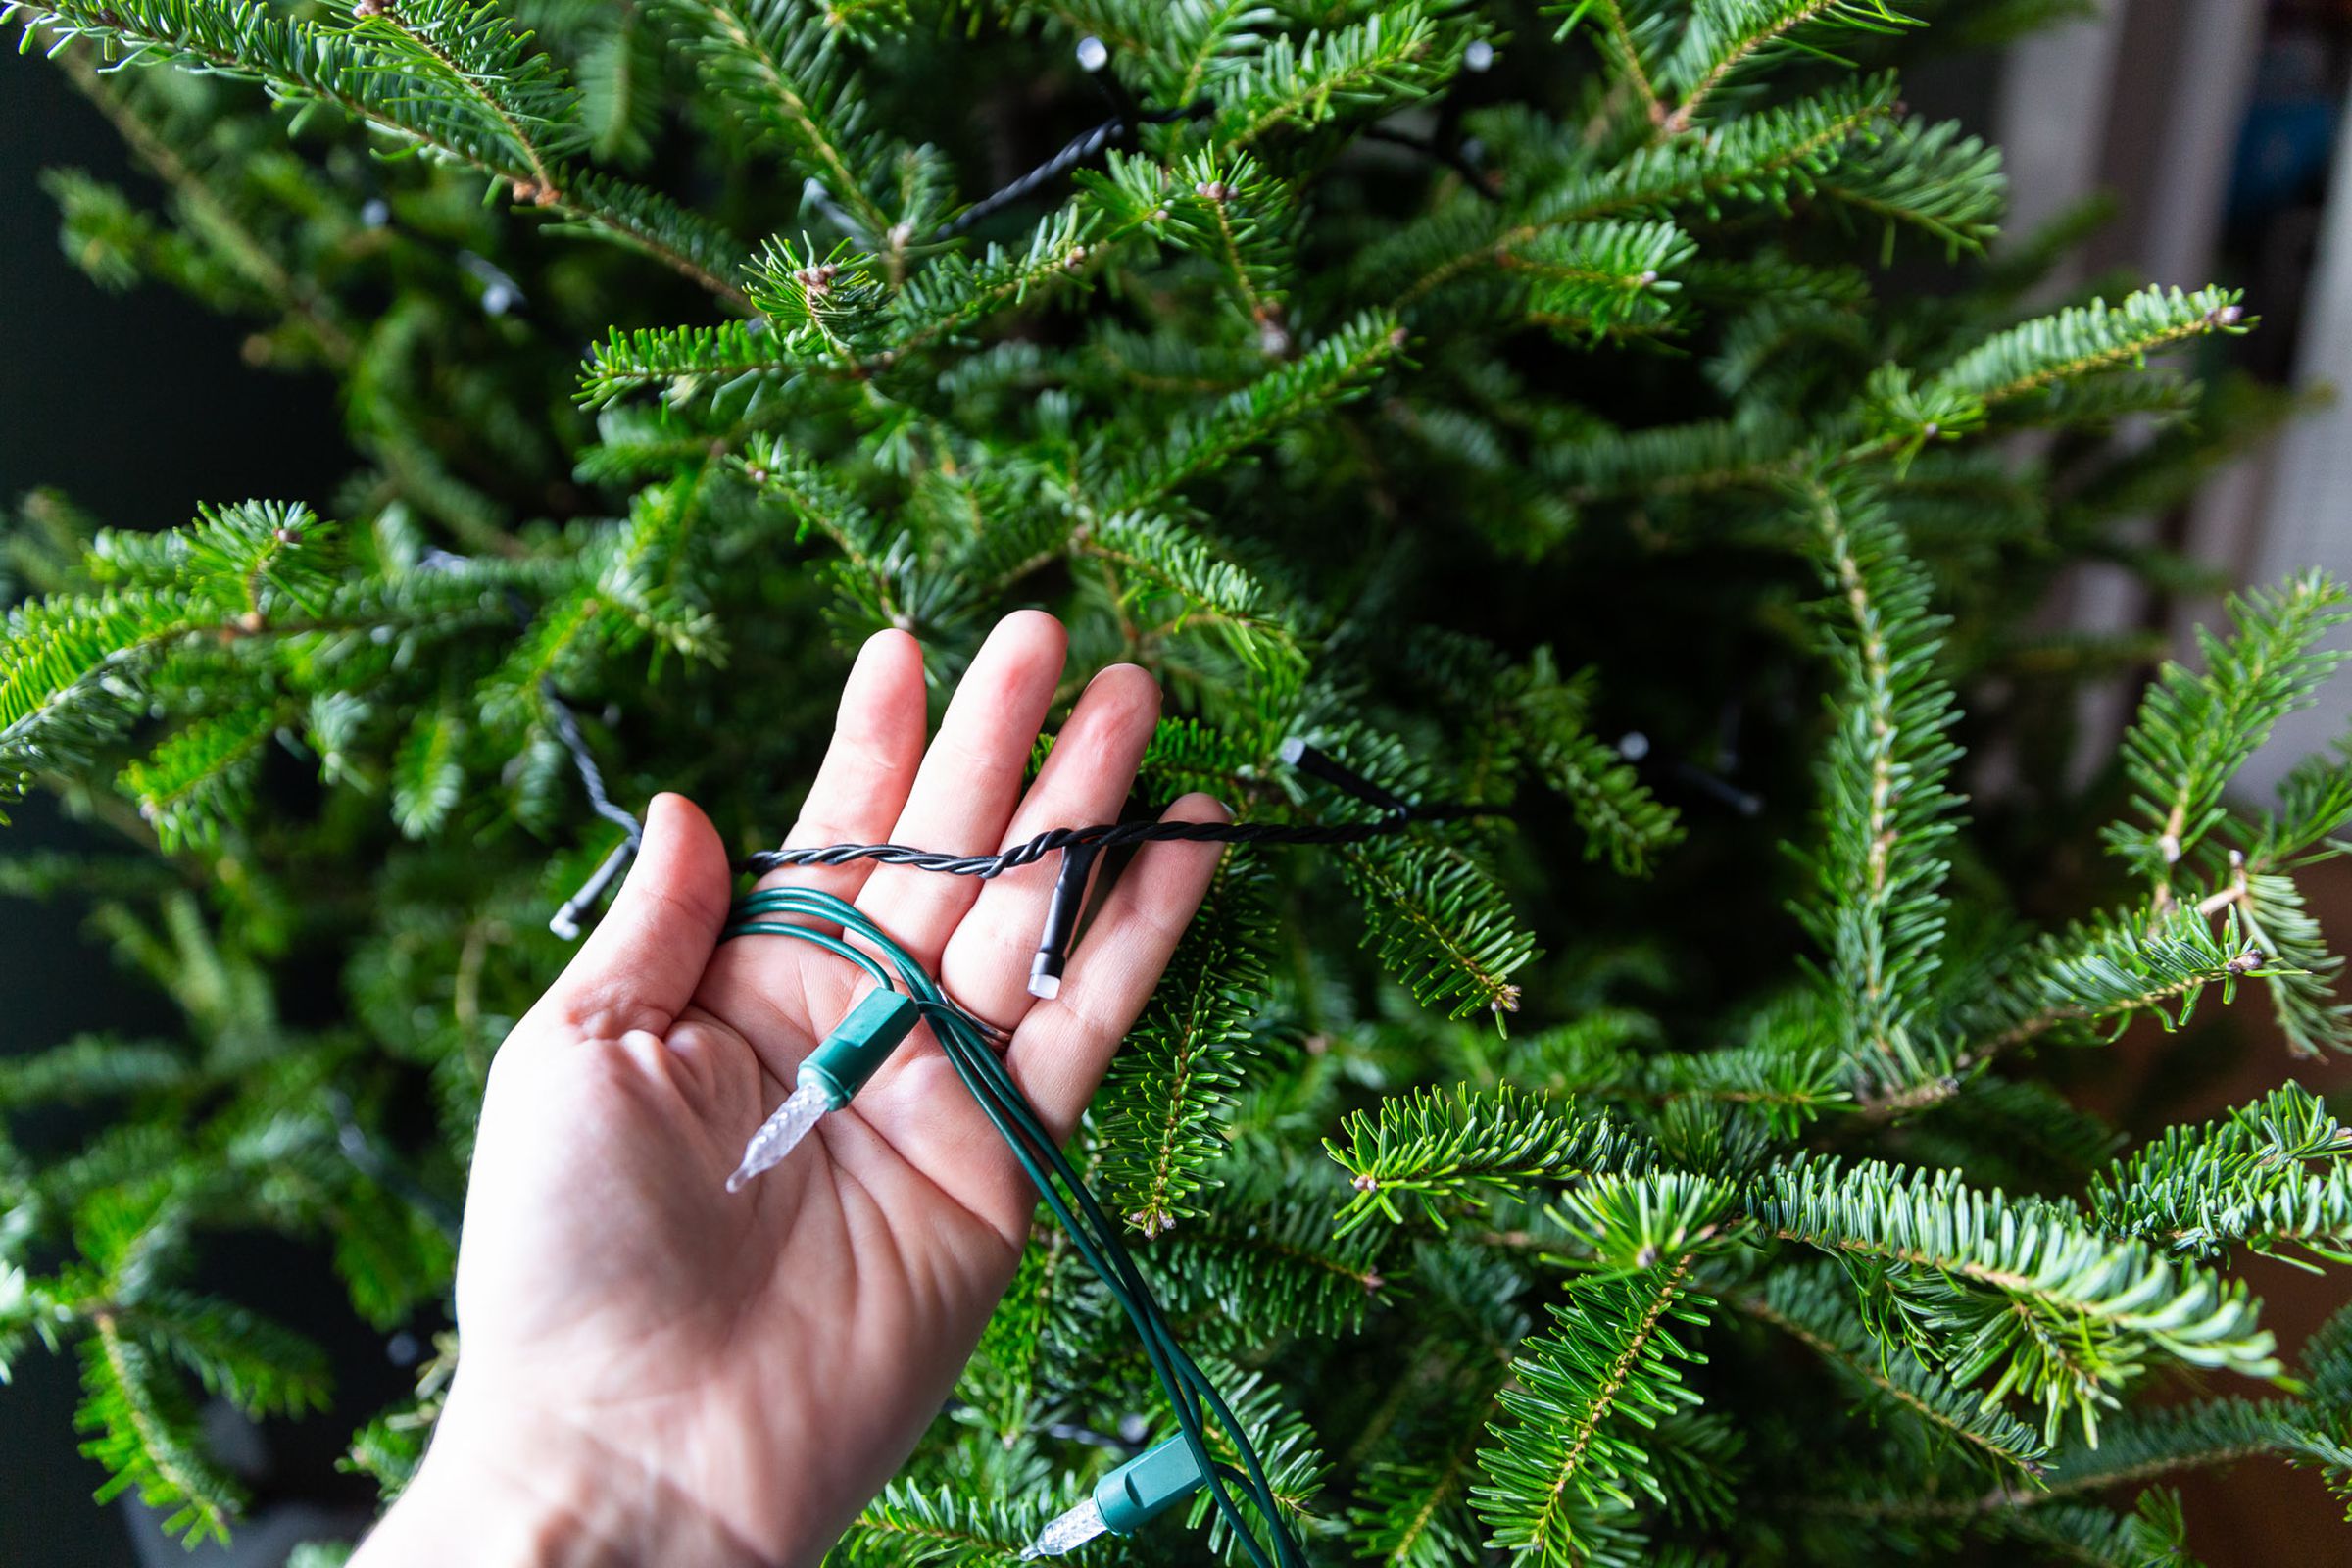 Bir Noel ağacının önünde, standart bir ipli ışık demeti ve çok daha ince bir Hue ipli ışık demeti tutan bir el.